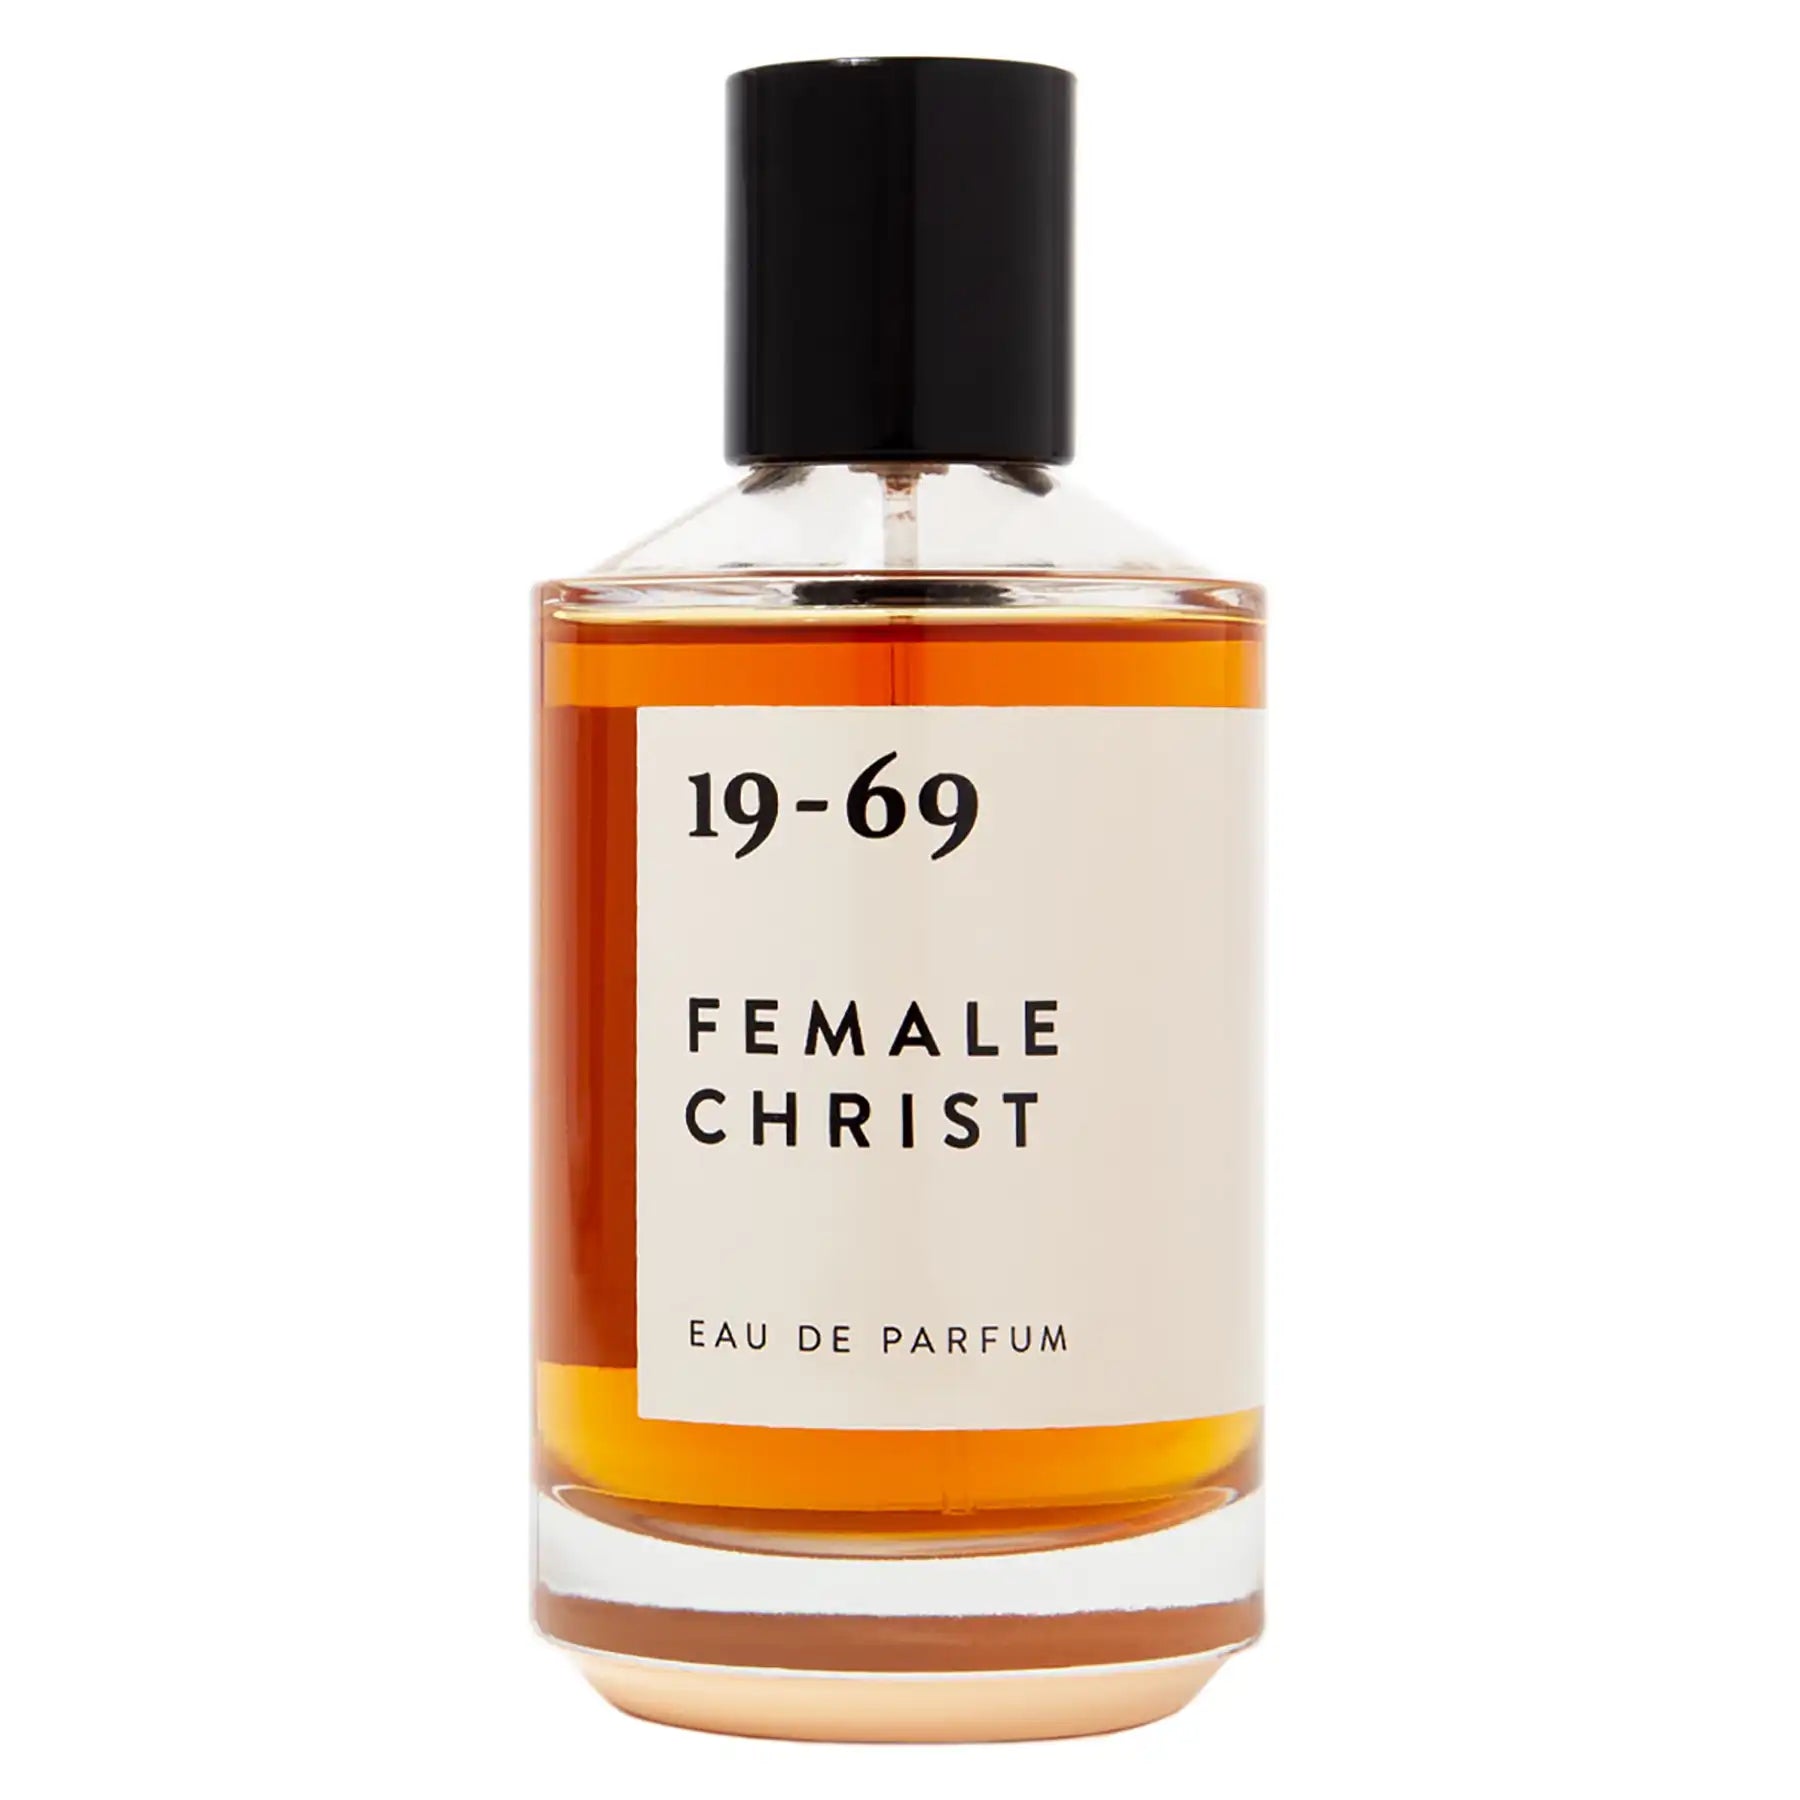 19-69 Female Christ Eau de Parfum